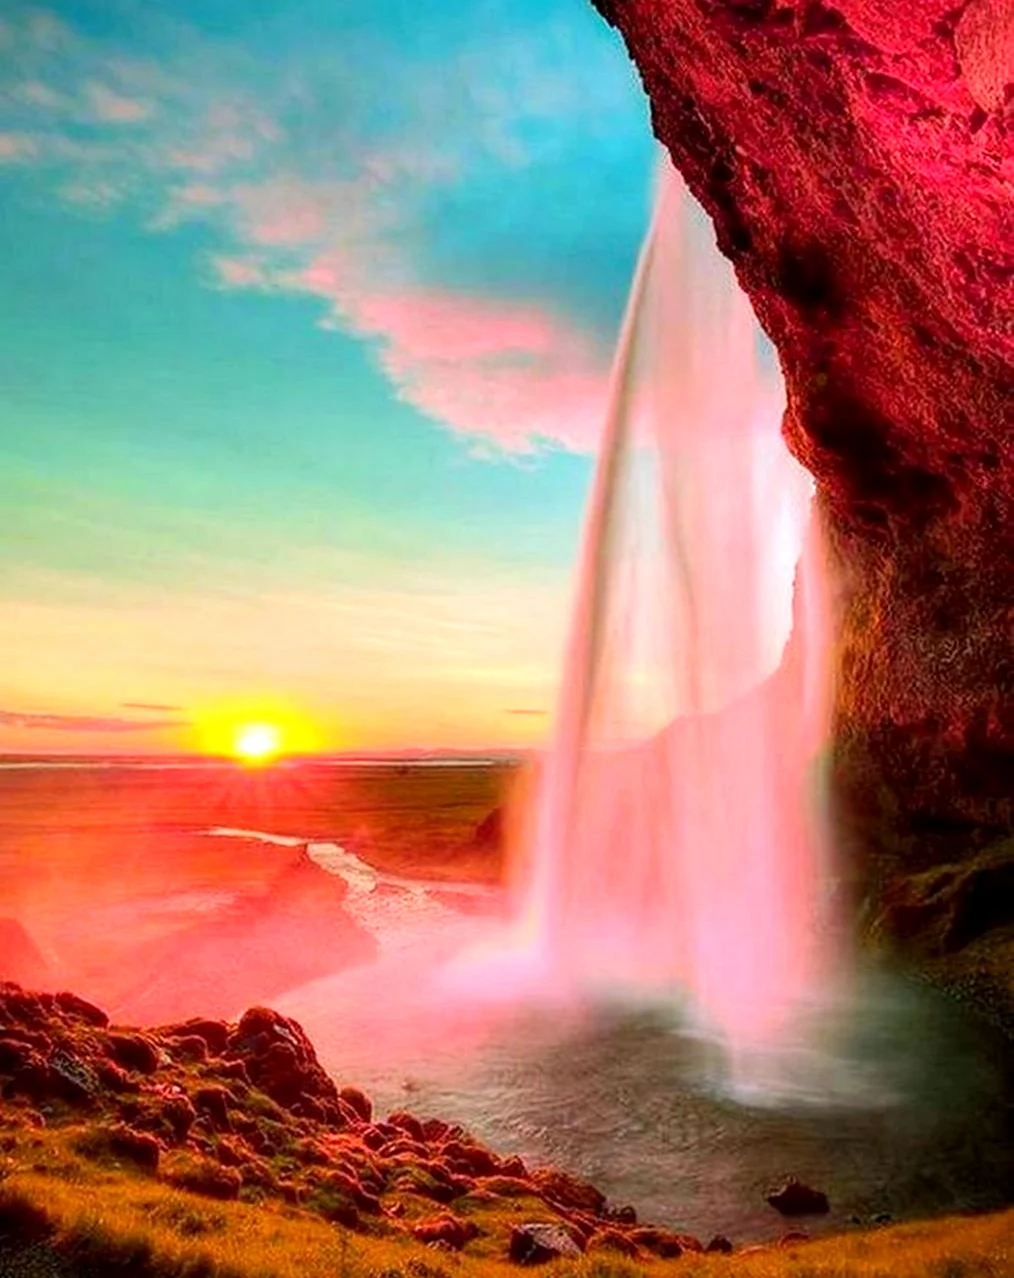 Водопад Сельяландсфосс. Красивая картинка